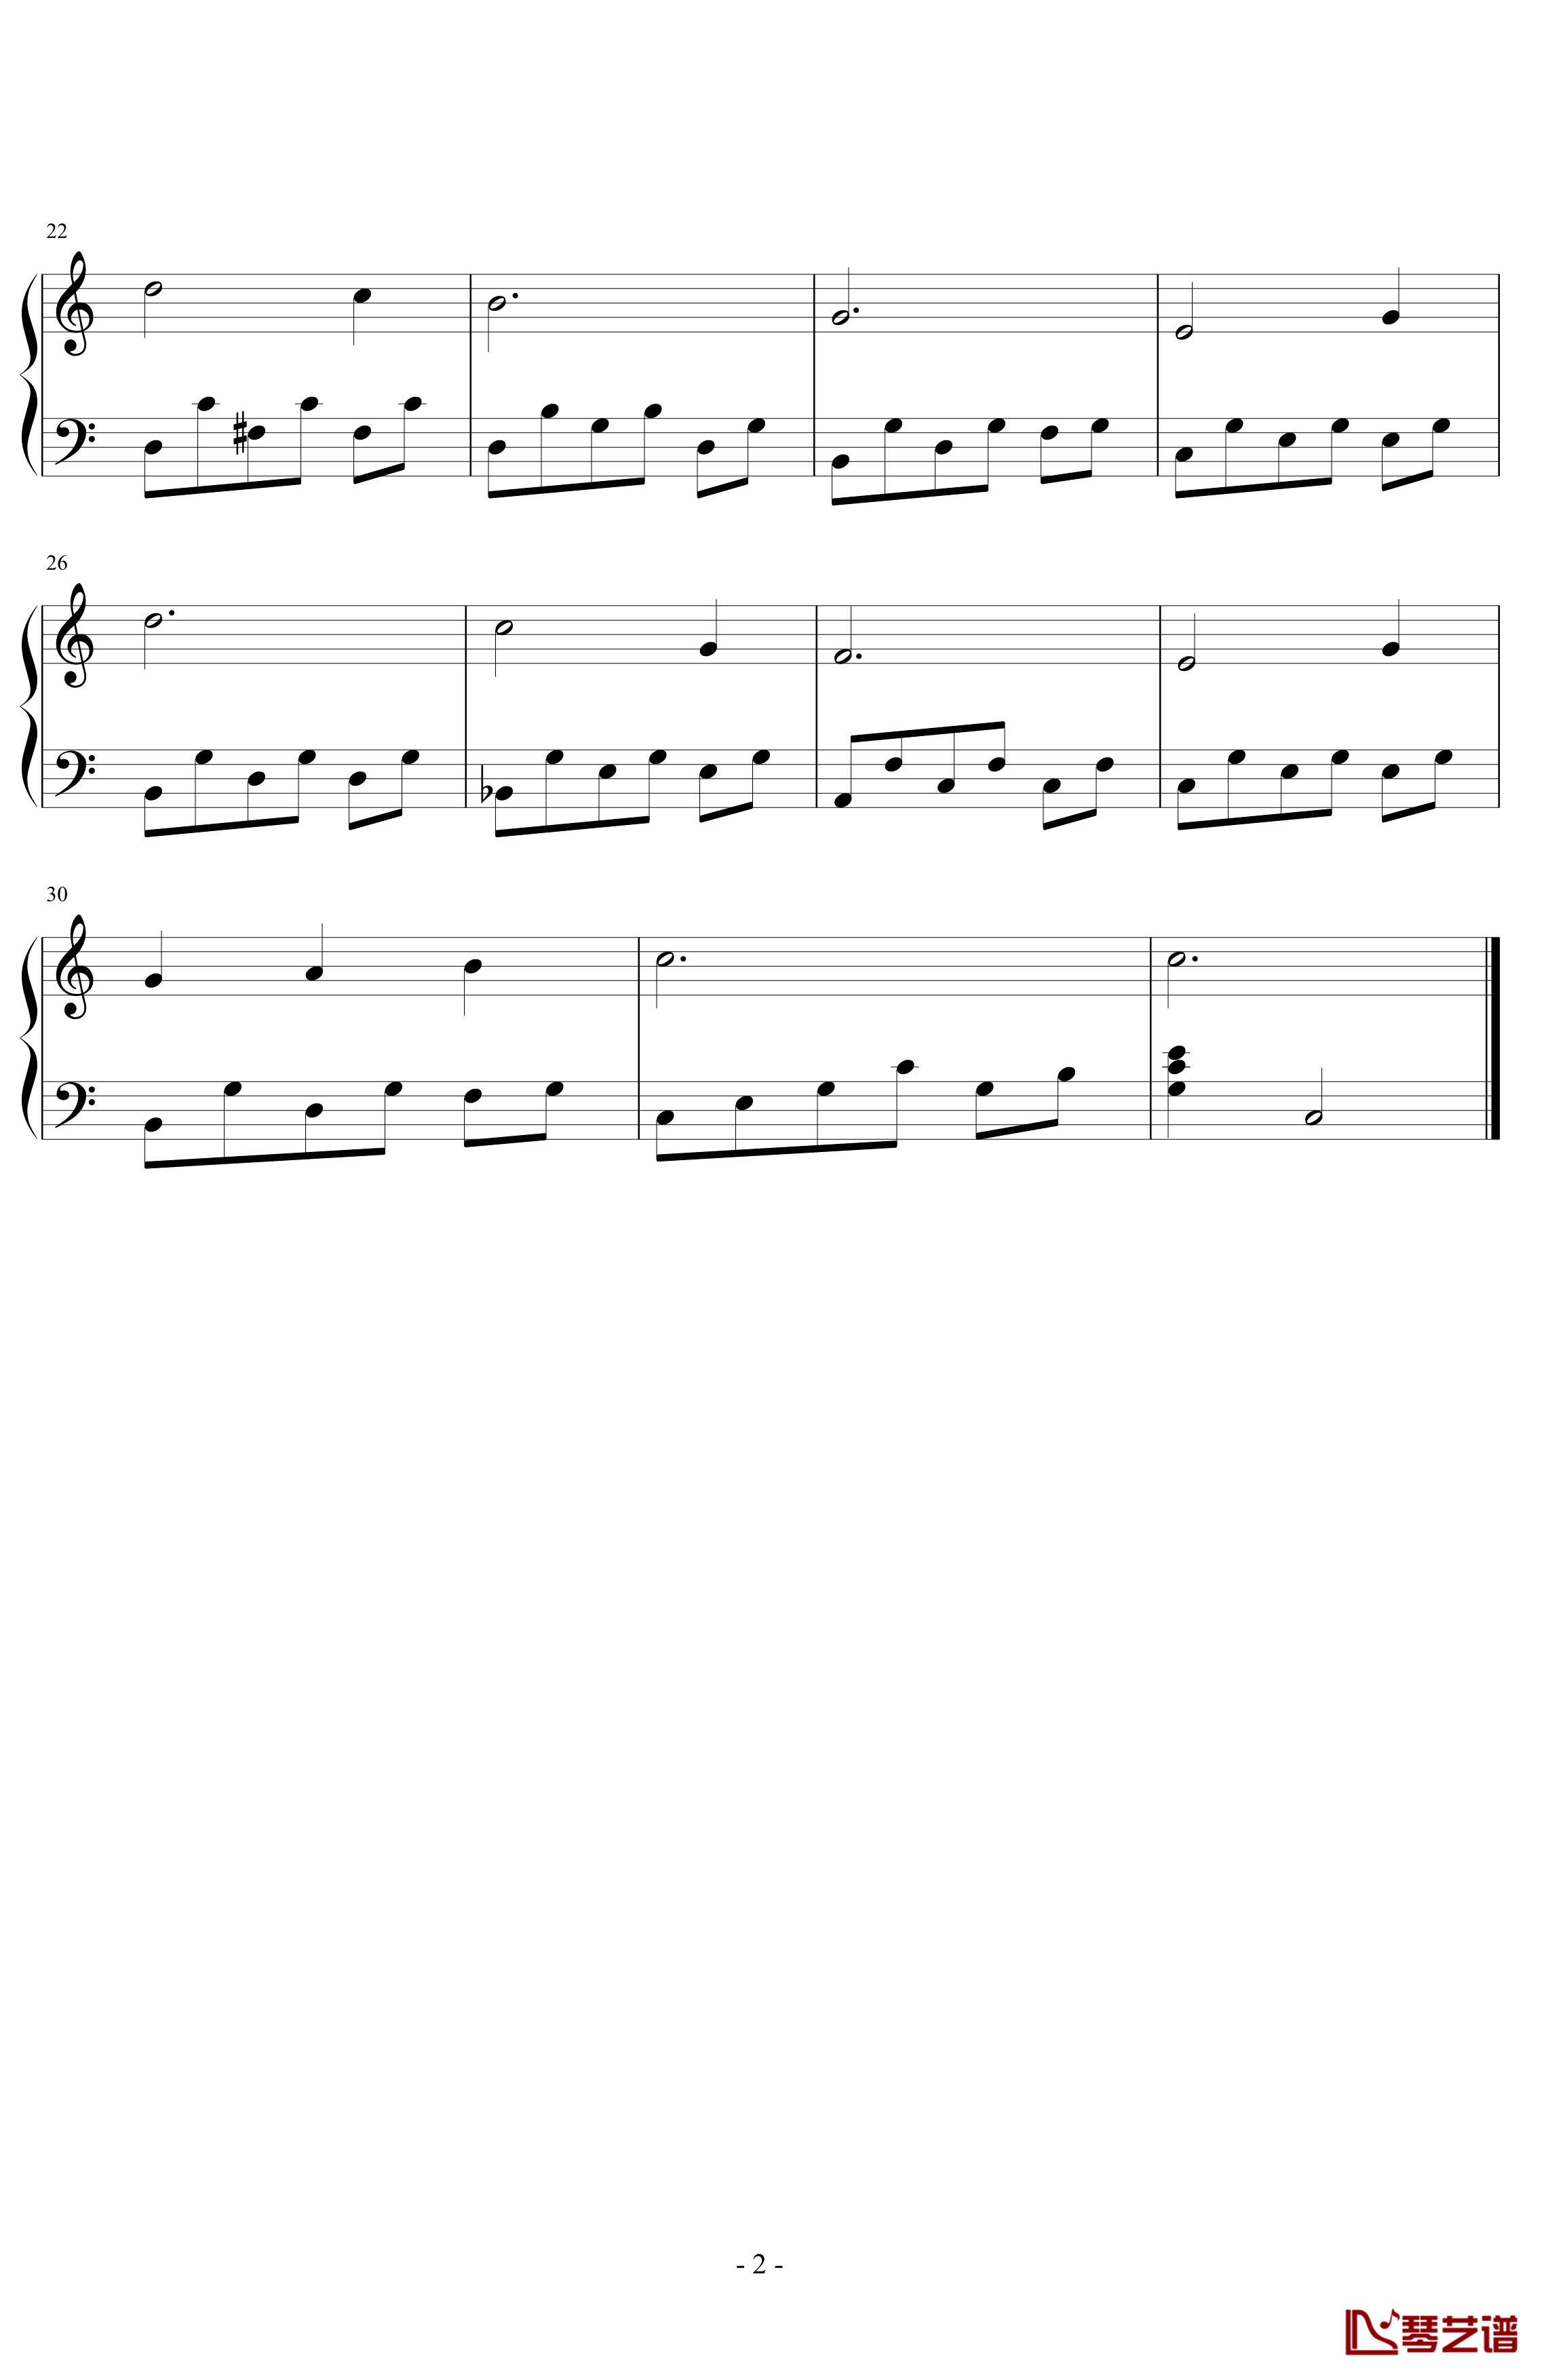 雪绒花钢琴谱-给初学者编配的最简易版-世界名曲2